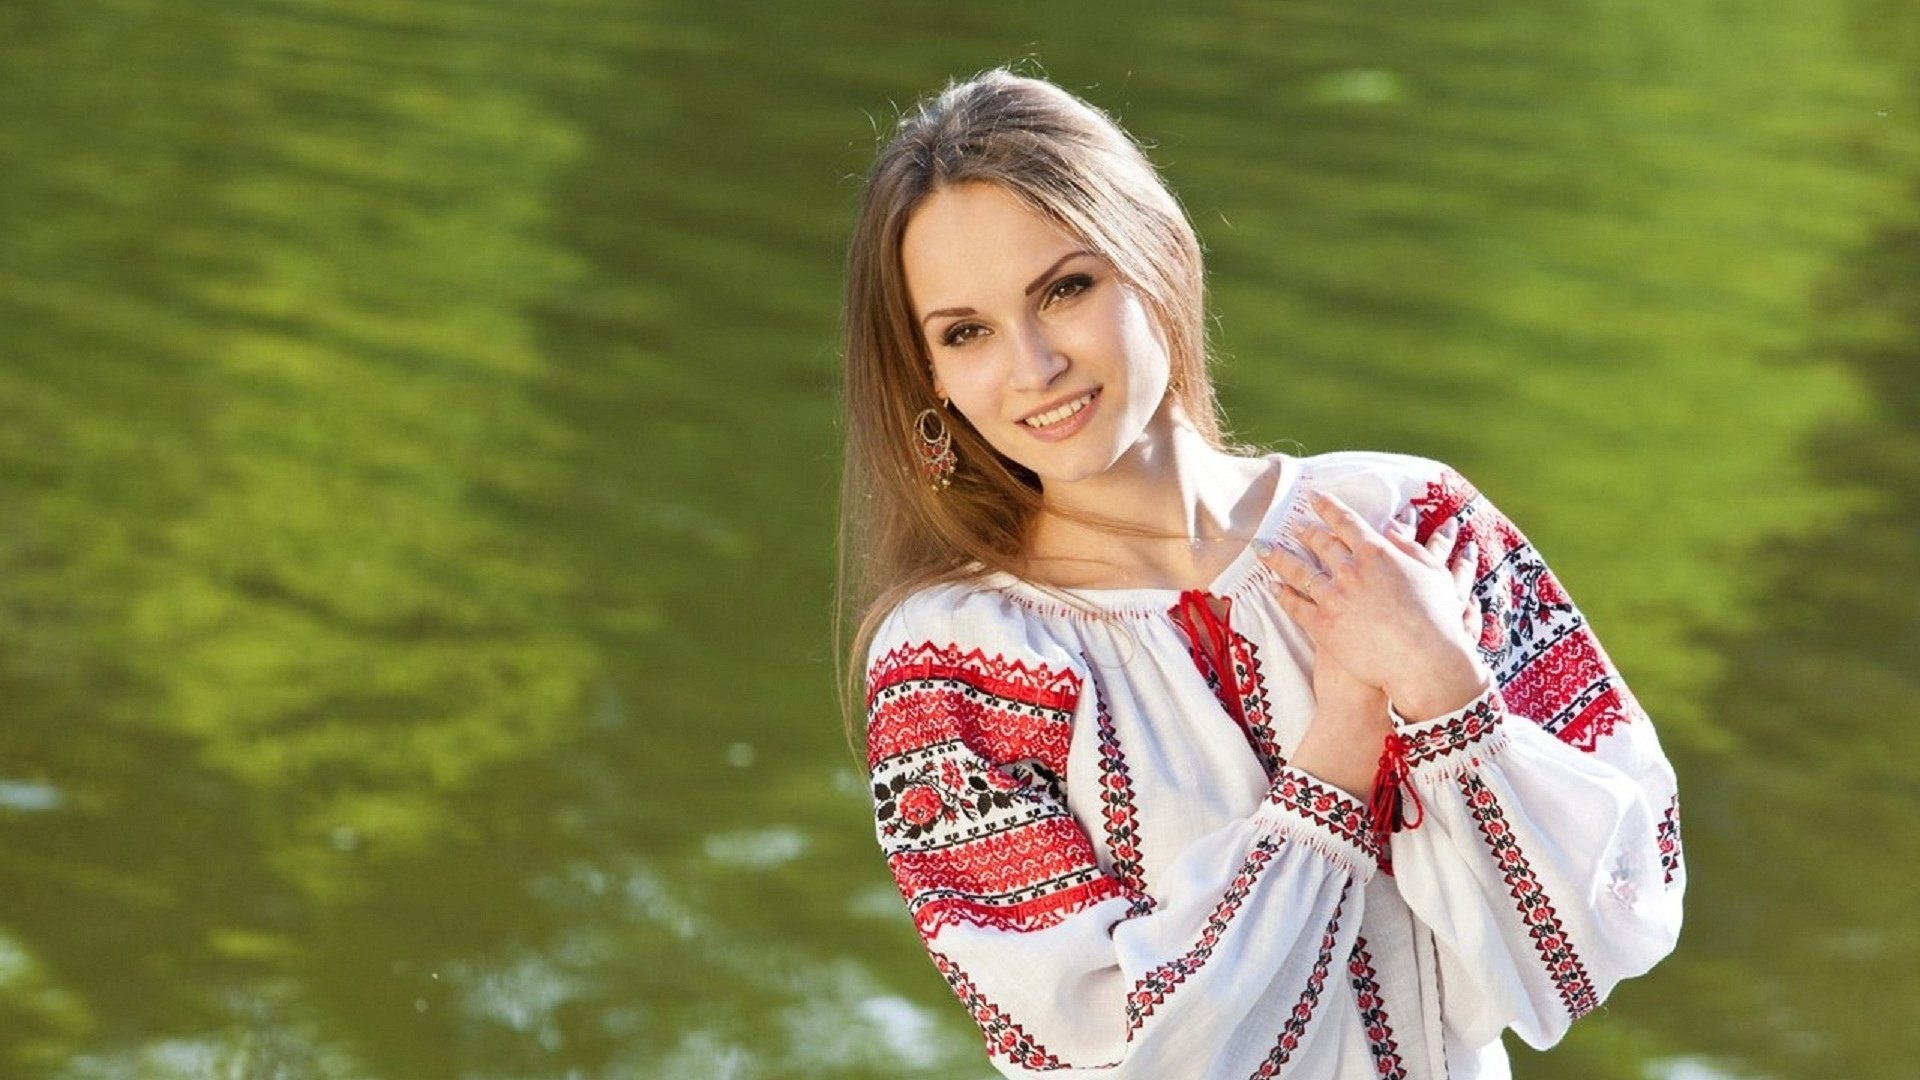 Самые красивые девушки беларуси вконтакте